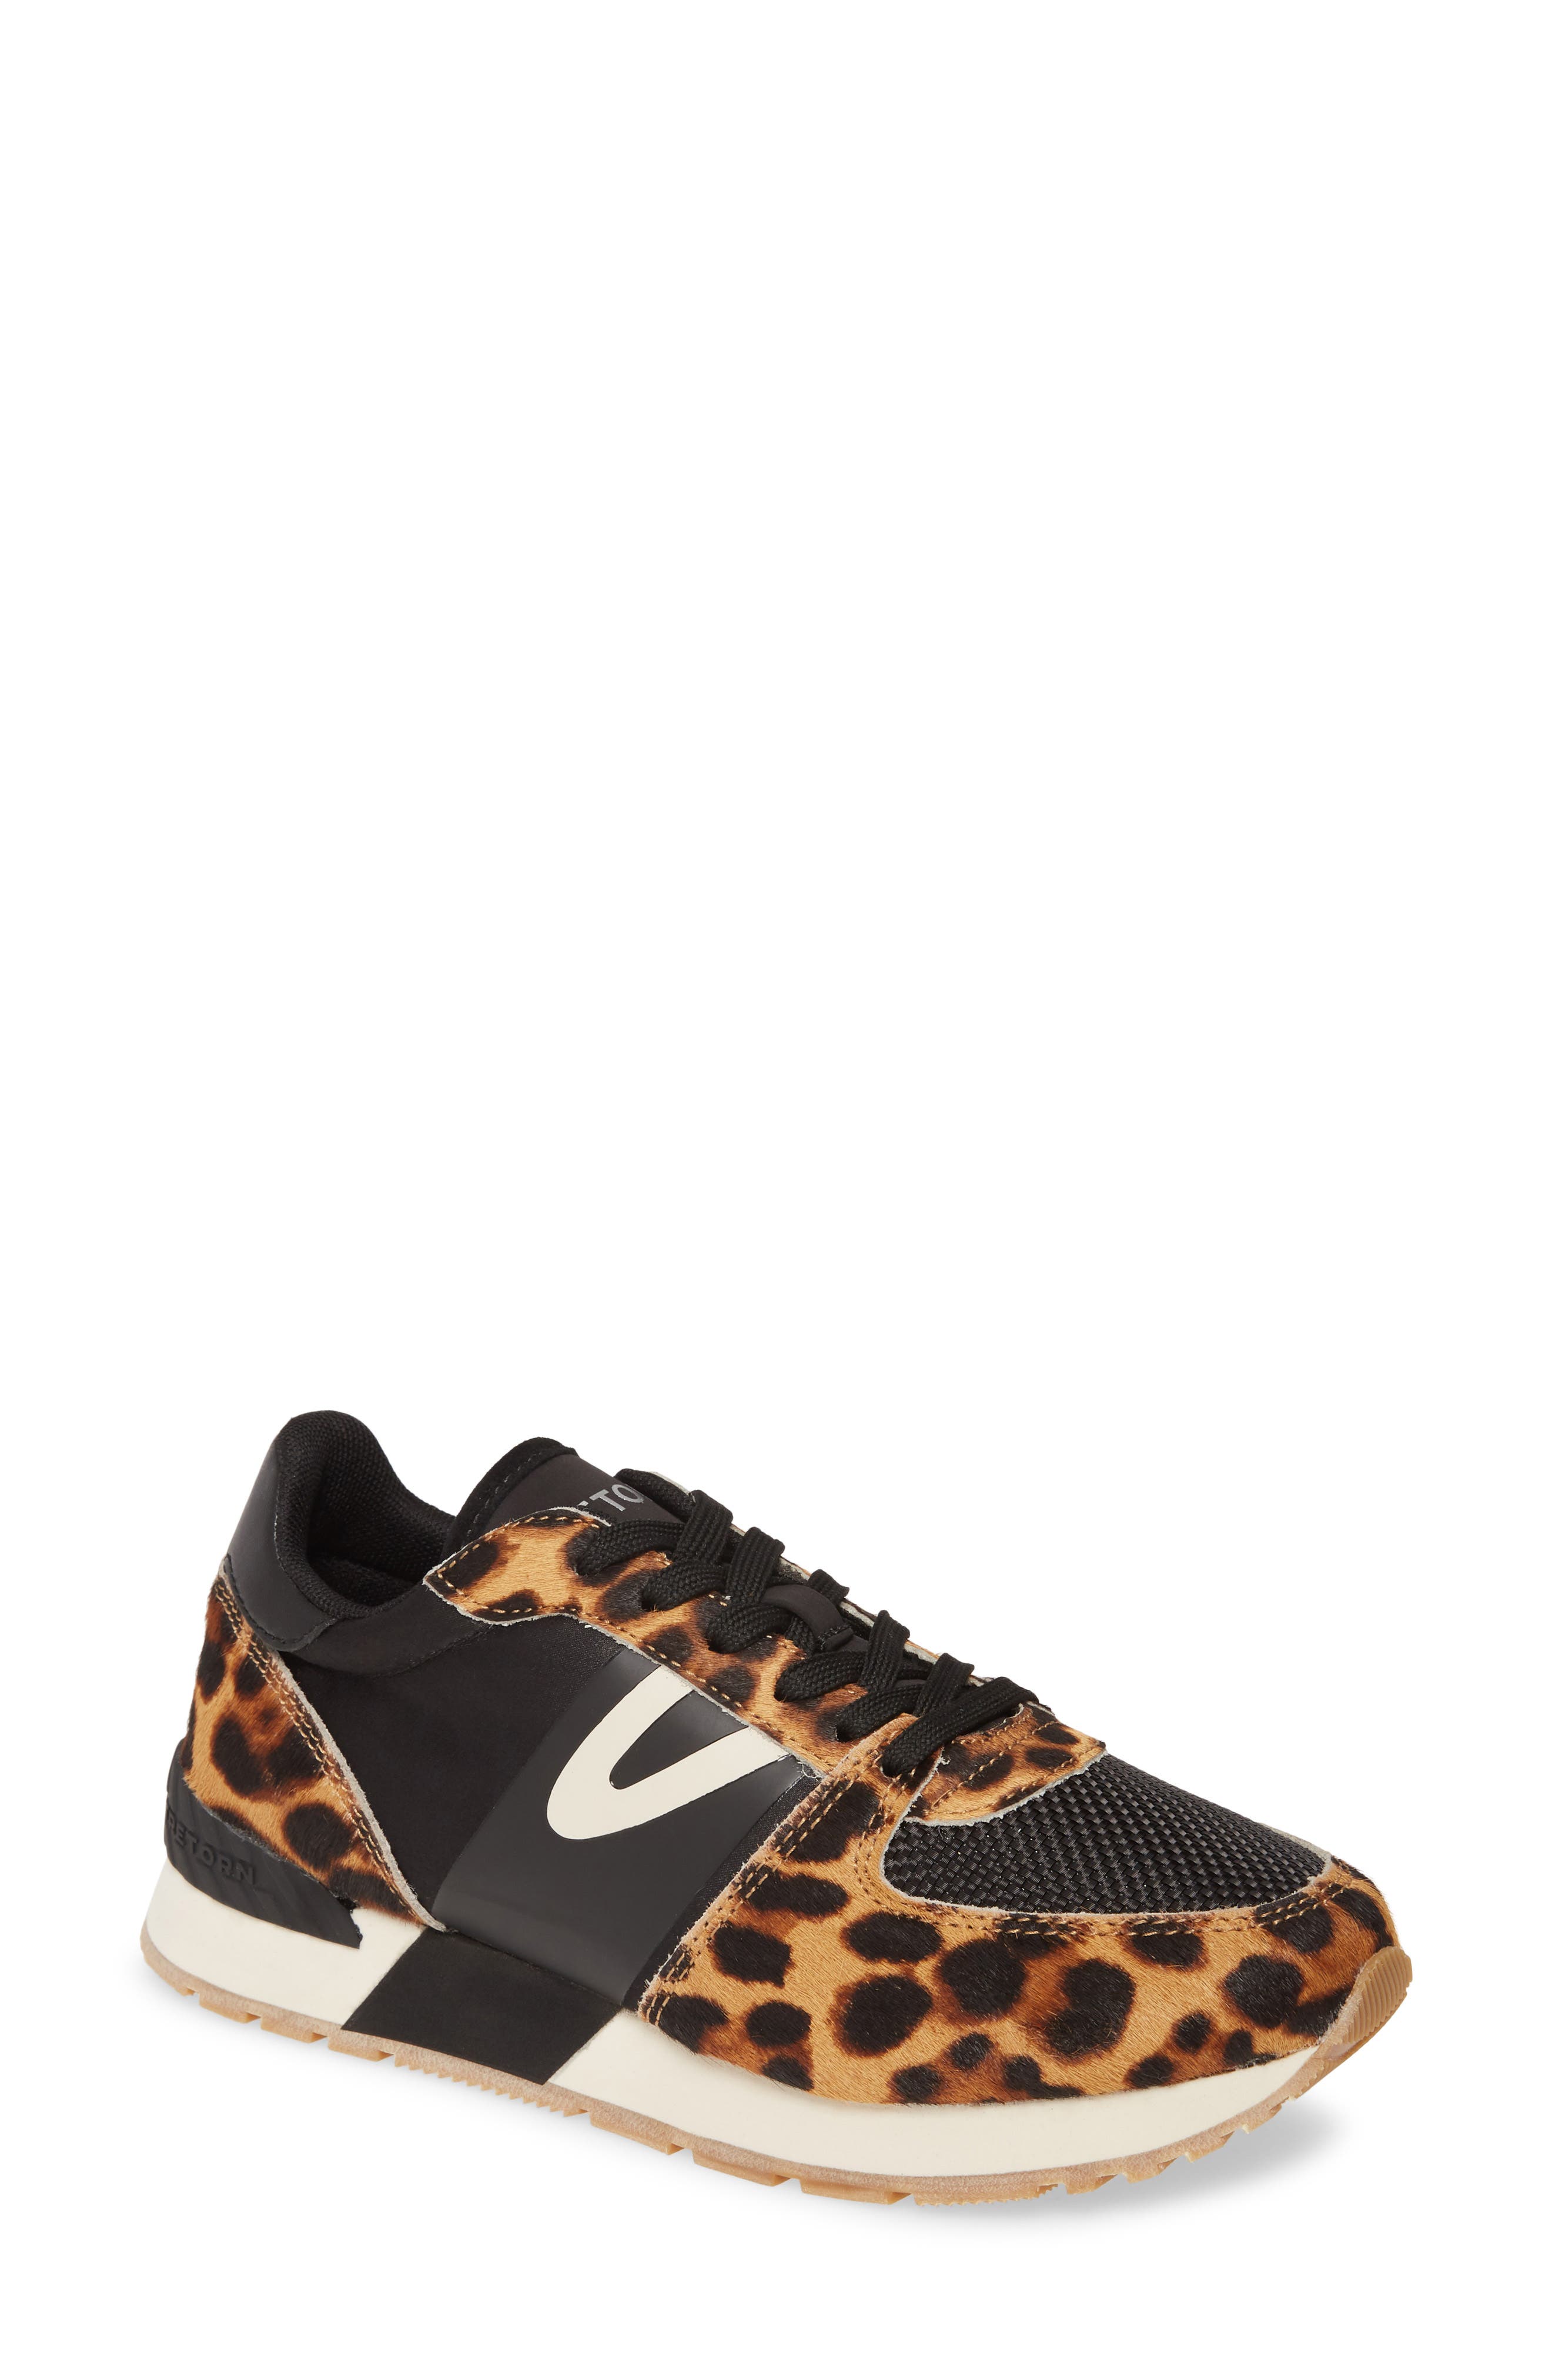 leopard tretorn sneakers